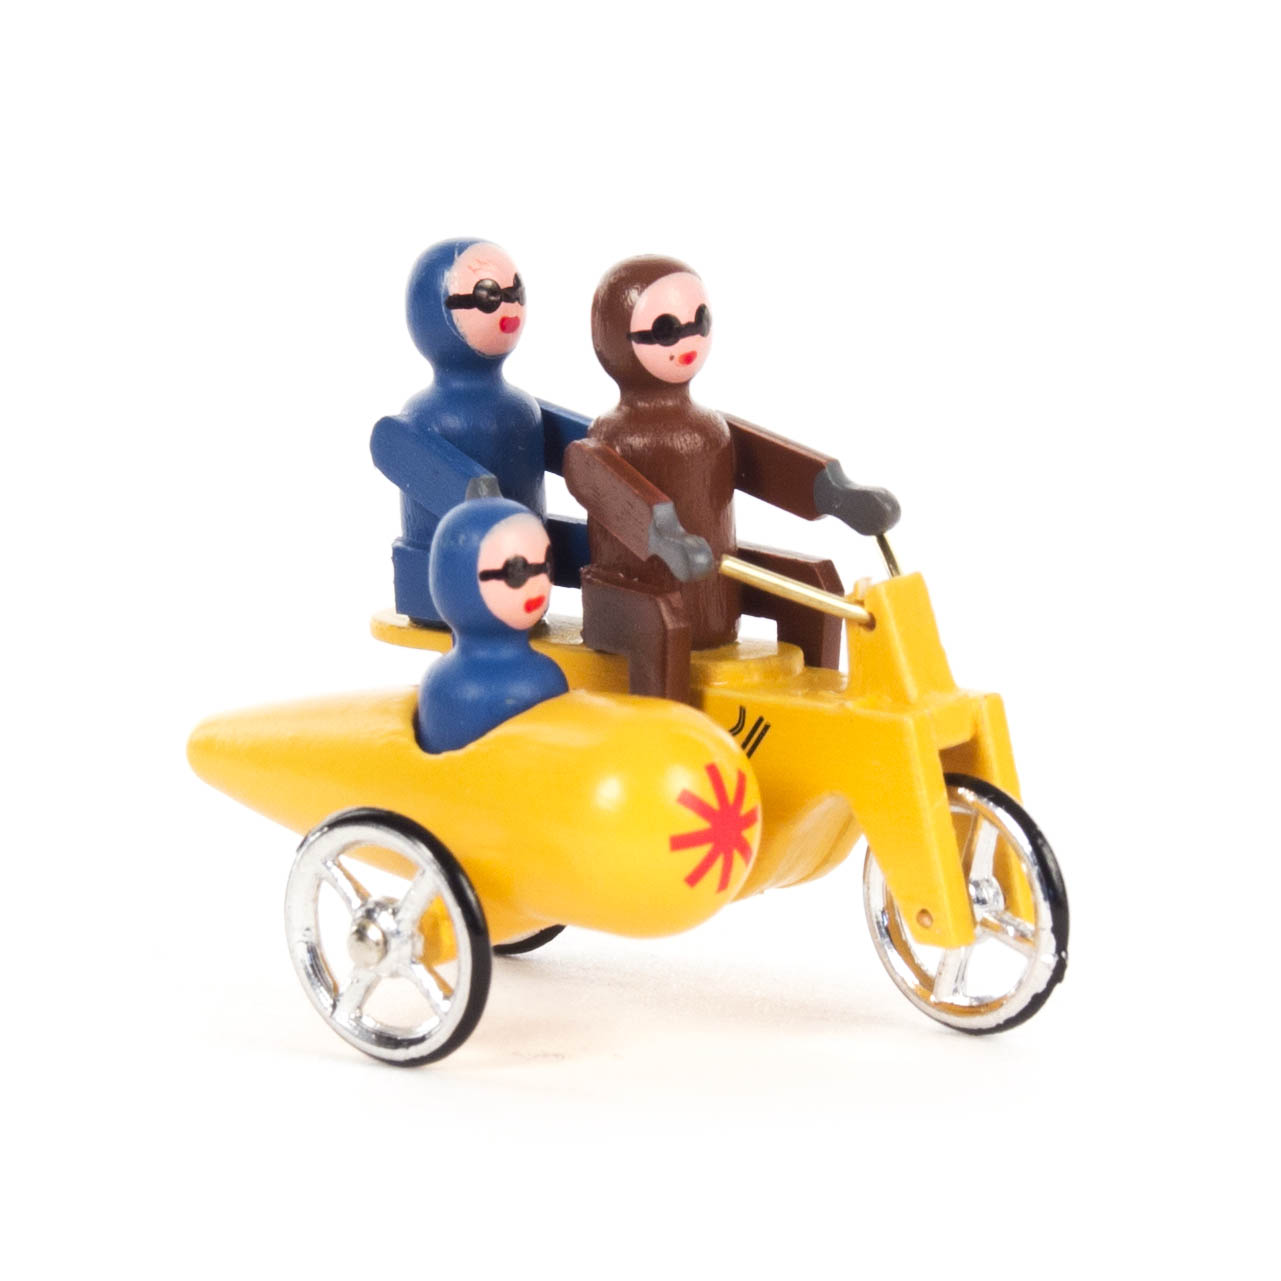 Miniatur Motorrad gelb, Doppelsitzer mit Seitenwagen im Dregeno Online Shop günstig kaufen